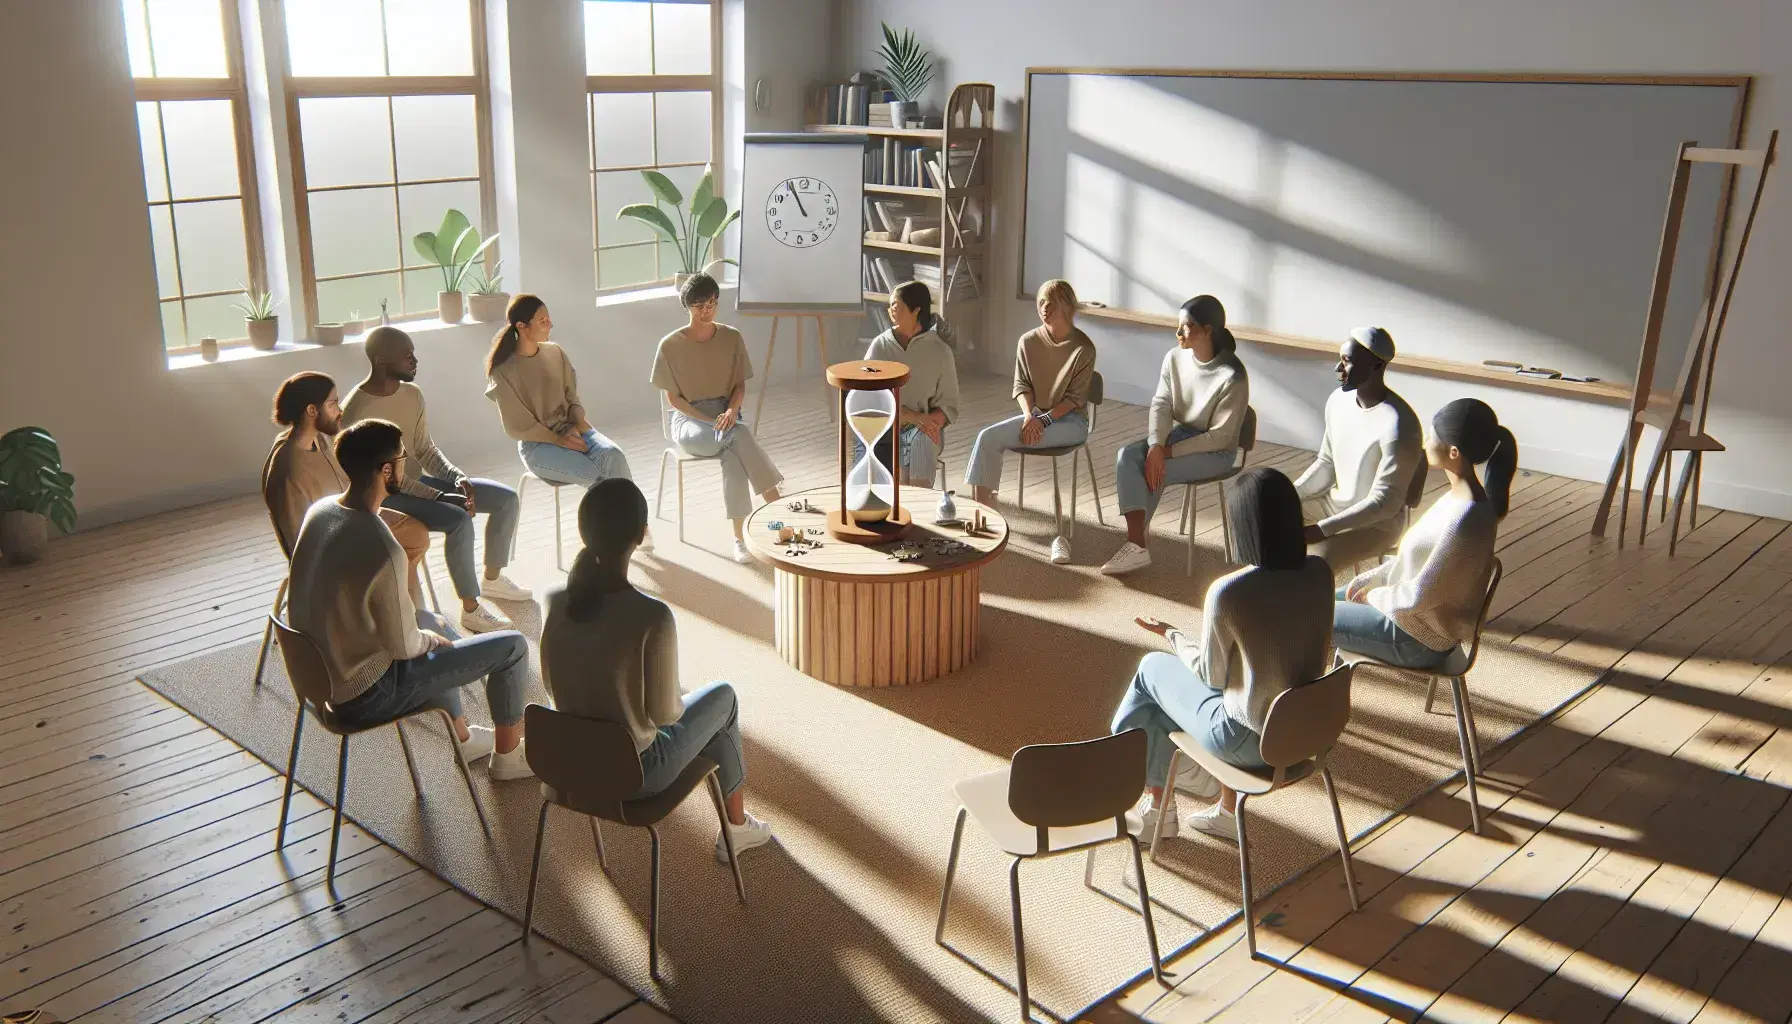 Grupo diverso de personas sentadas en círculo en una sala iluminada naturalmente, con mesa central conteniendo un reloj de arena, rompecabezas y planta, frente a una pizarra blanca.